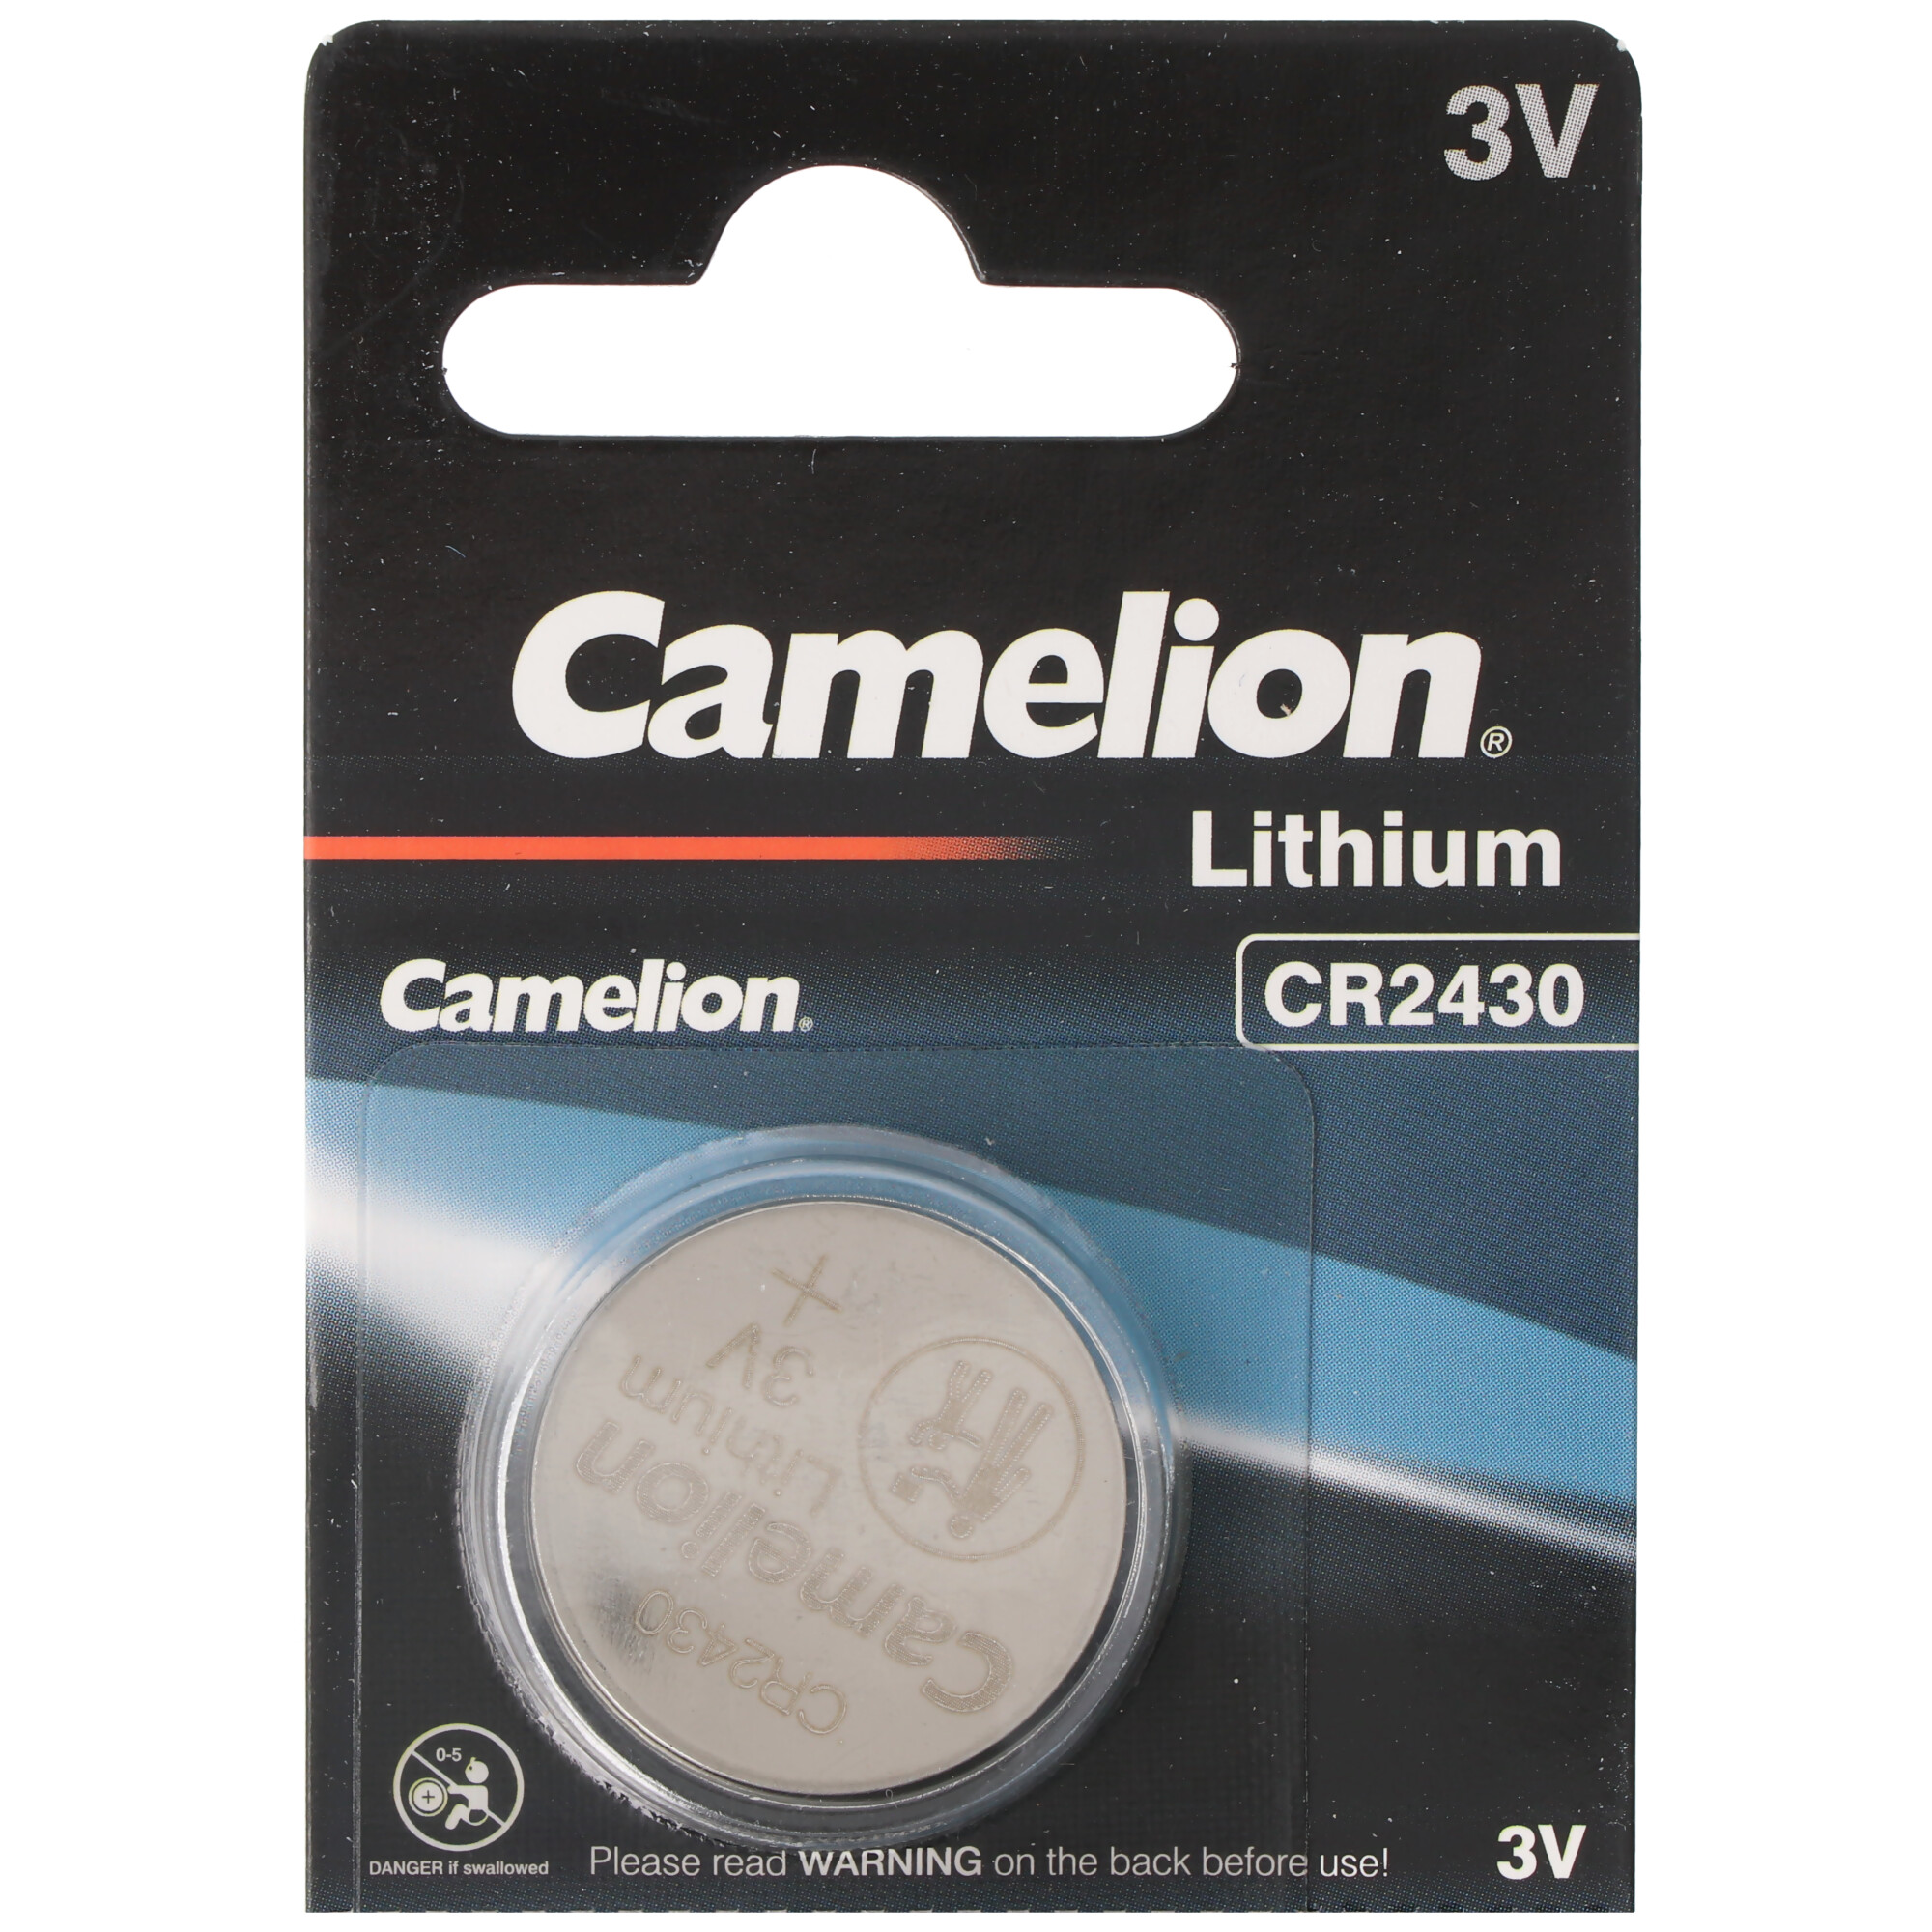 Camelion CR2430 Lithium Batterie im praktischen 5er Set